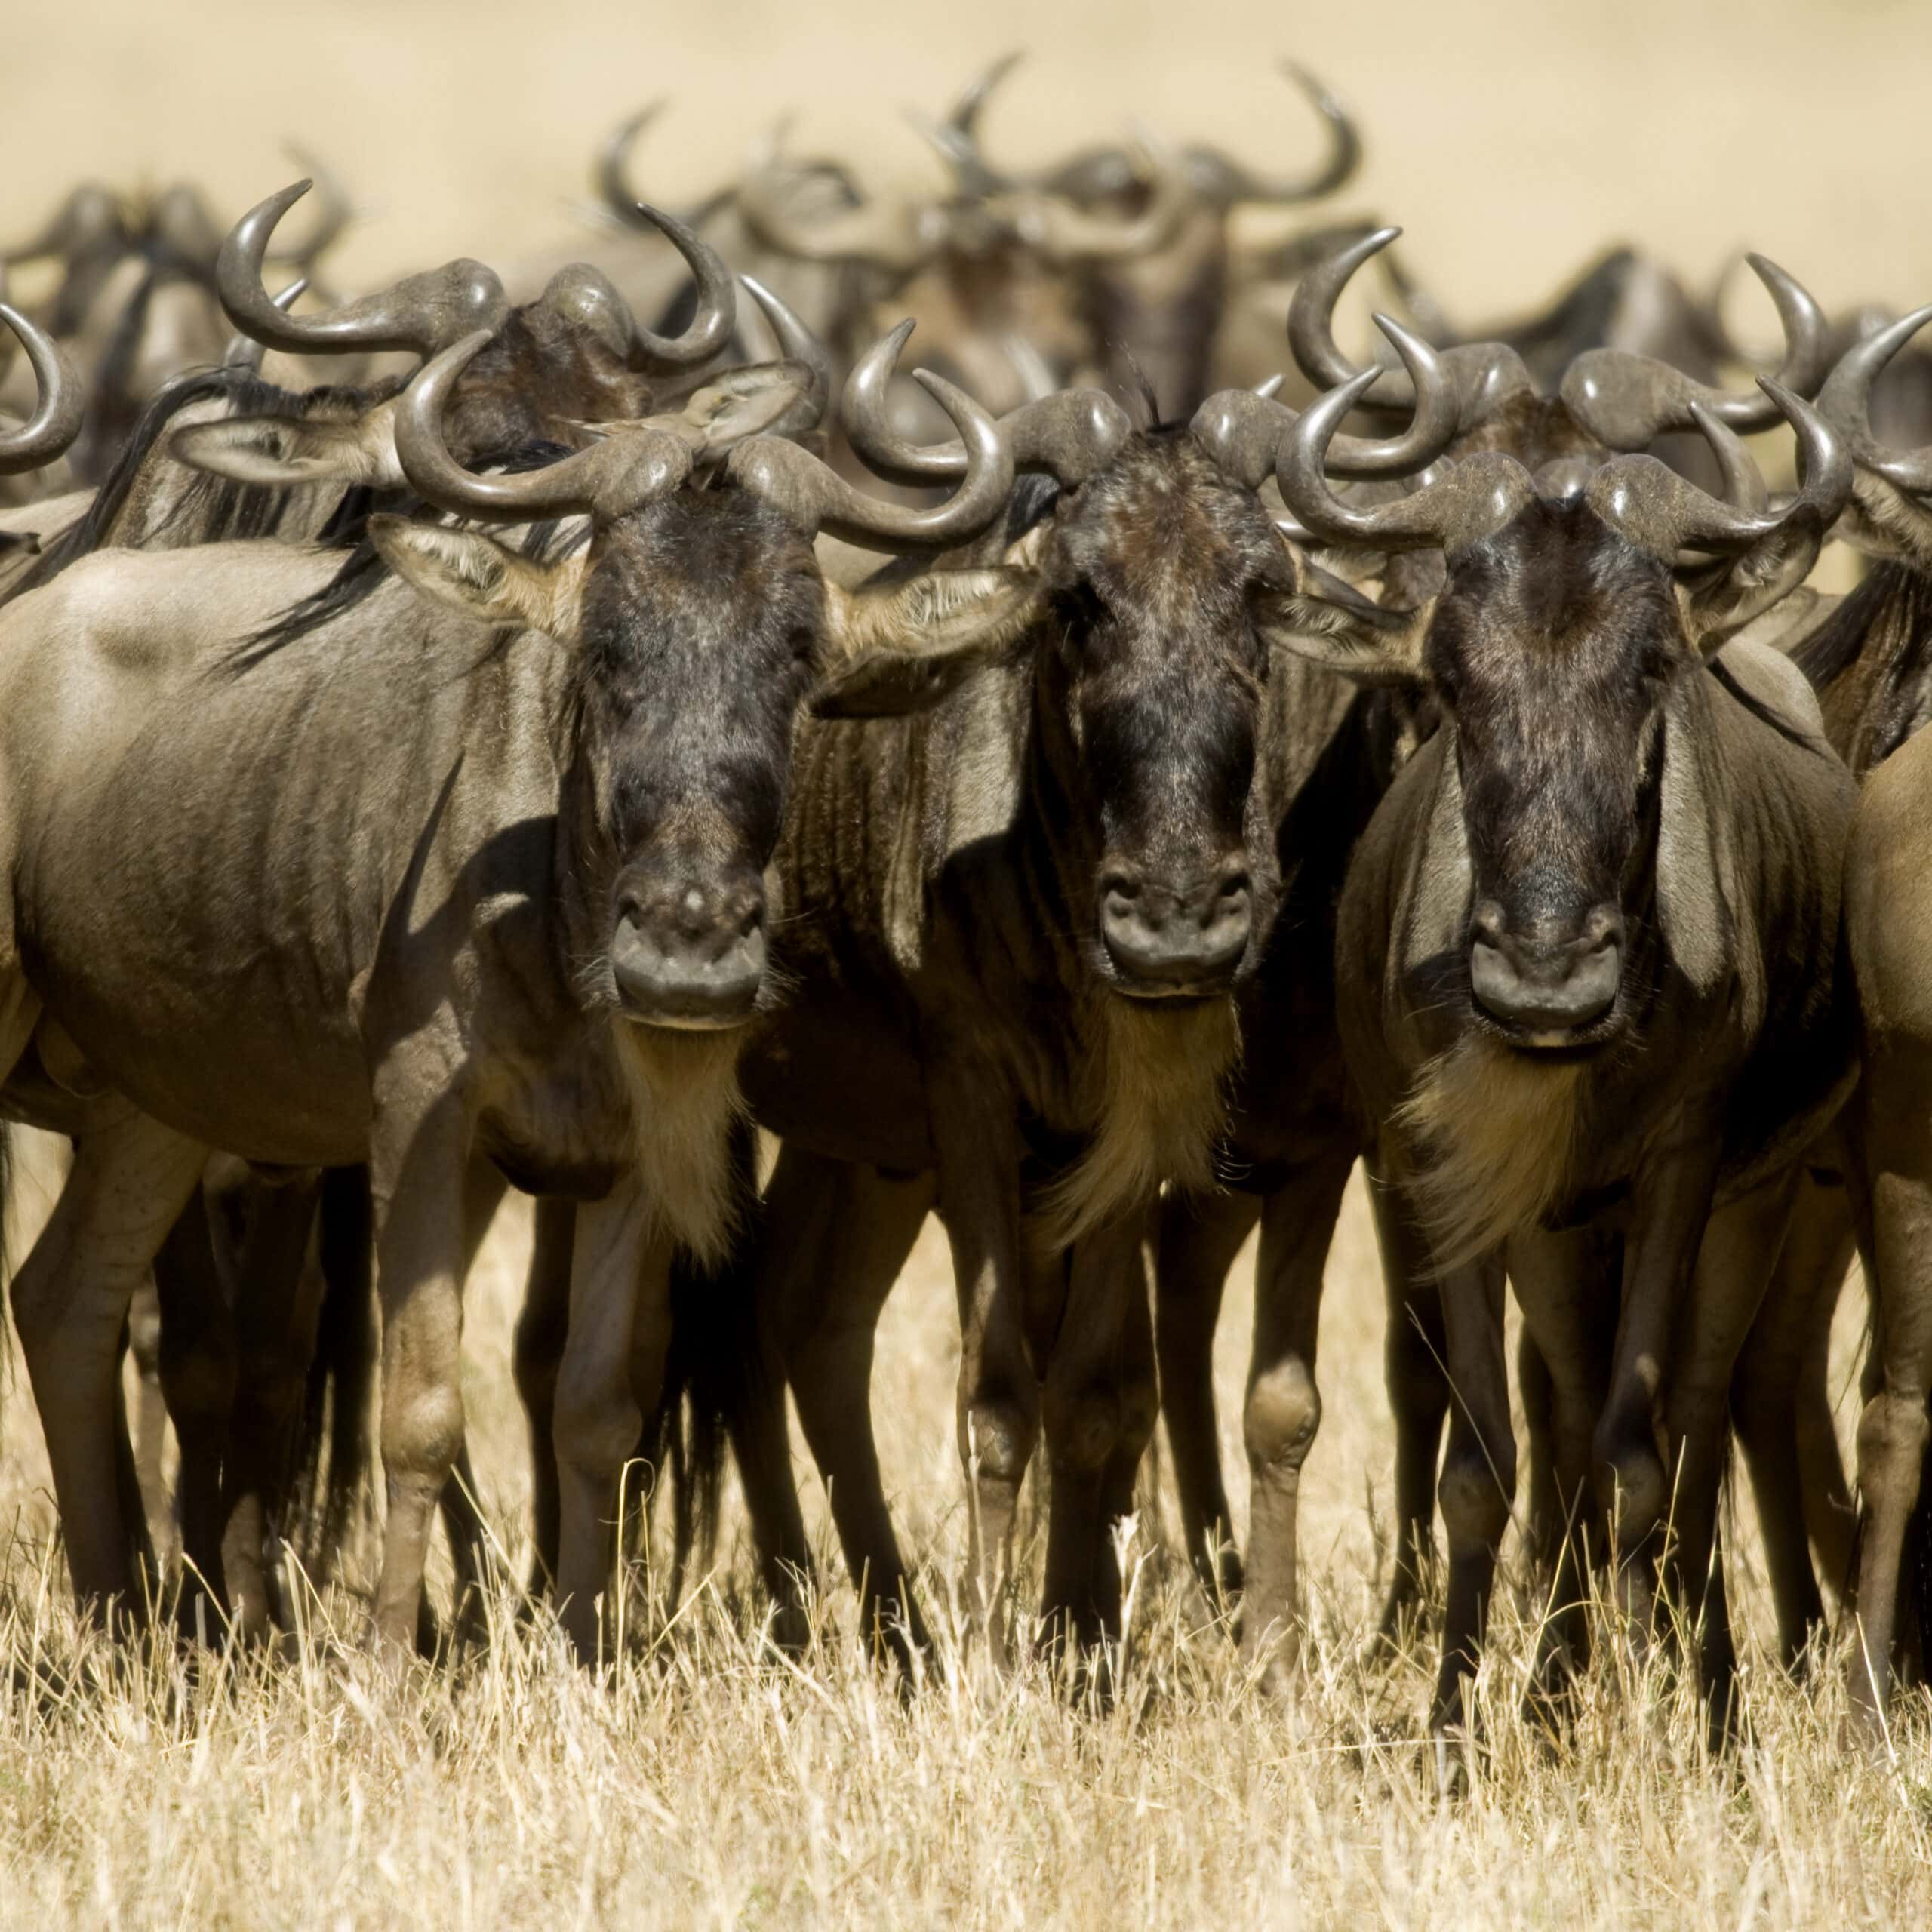 wildebeest masai mara kenya 2021 08 26 18 00 22 utc 1 scaled